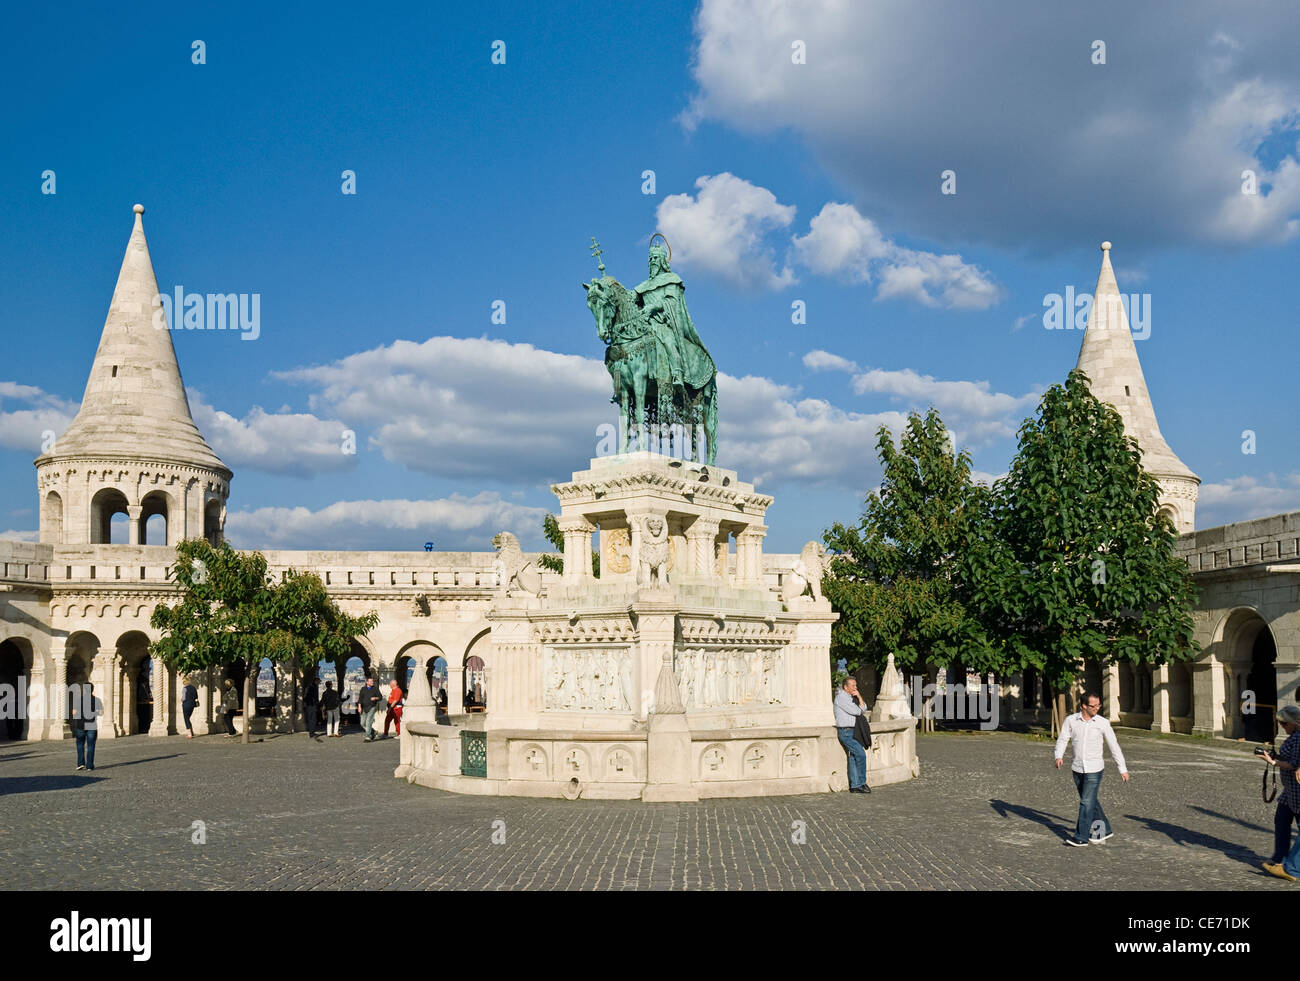 Santo Stefano statua al bastione dei pescatori (neo-romanica), Castle Hill District (Varhegy), Buda, Budapest, Ungheria. Foto Stock